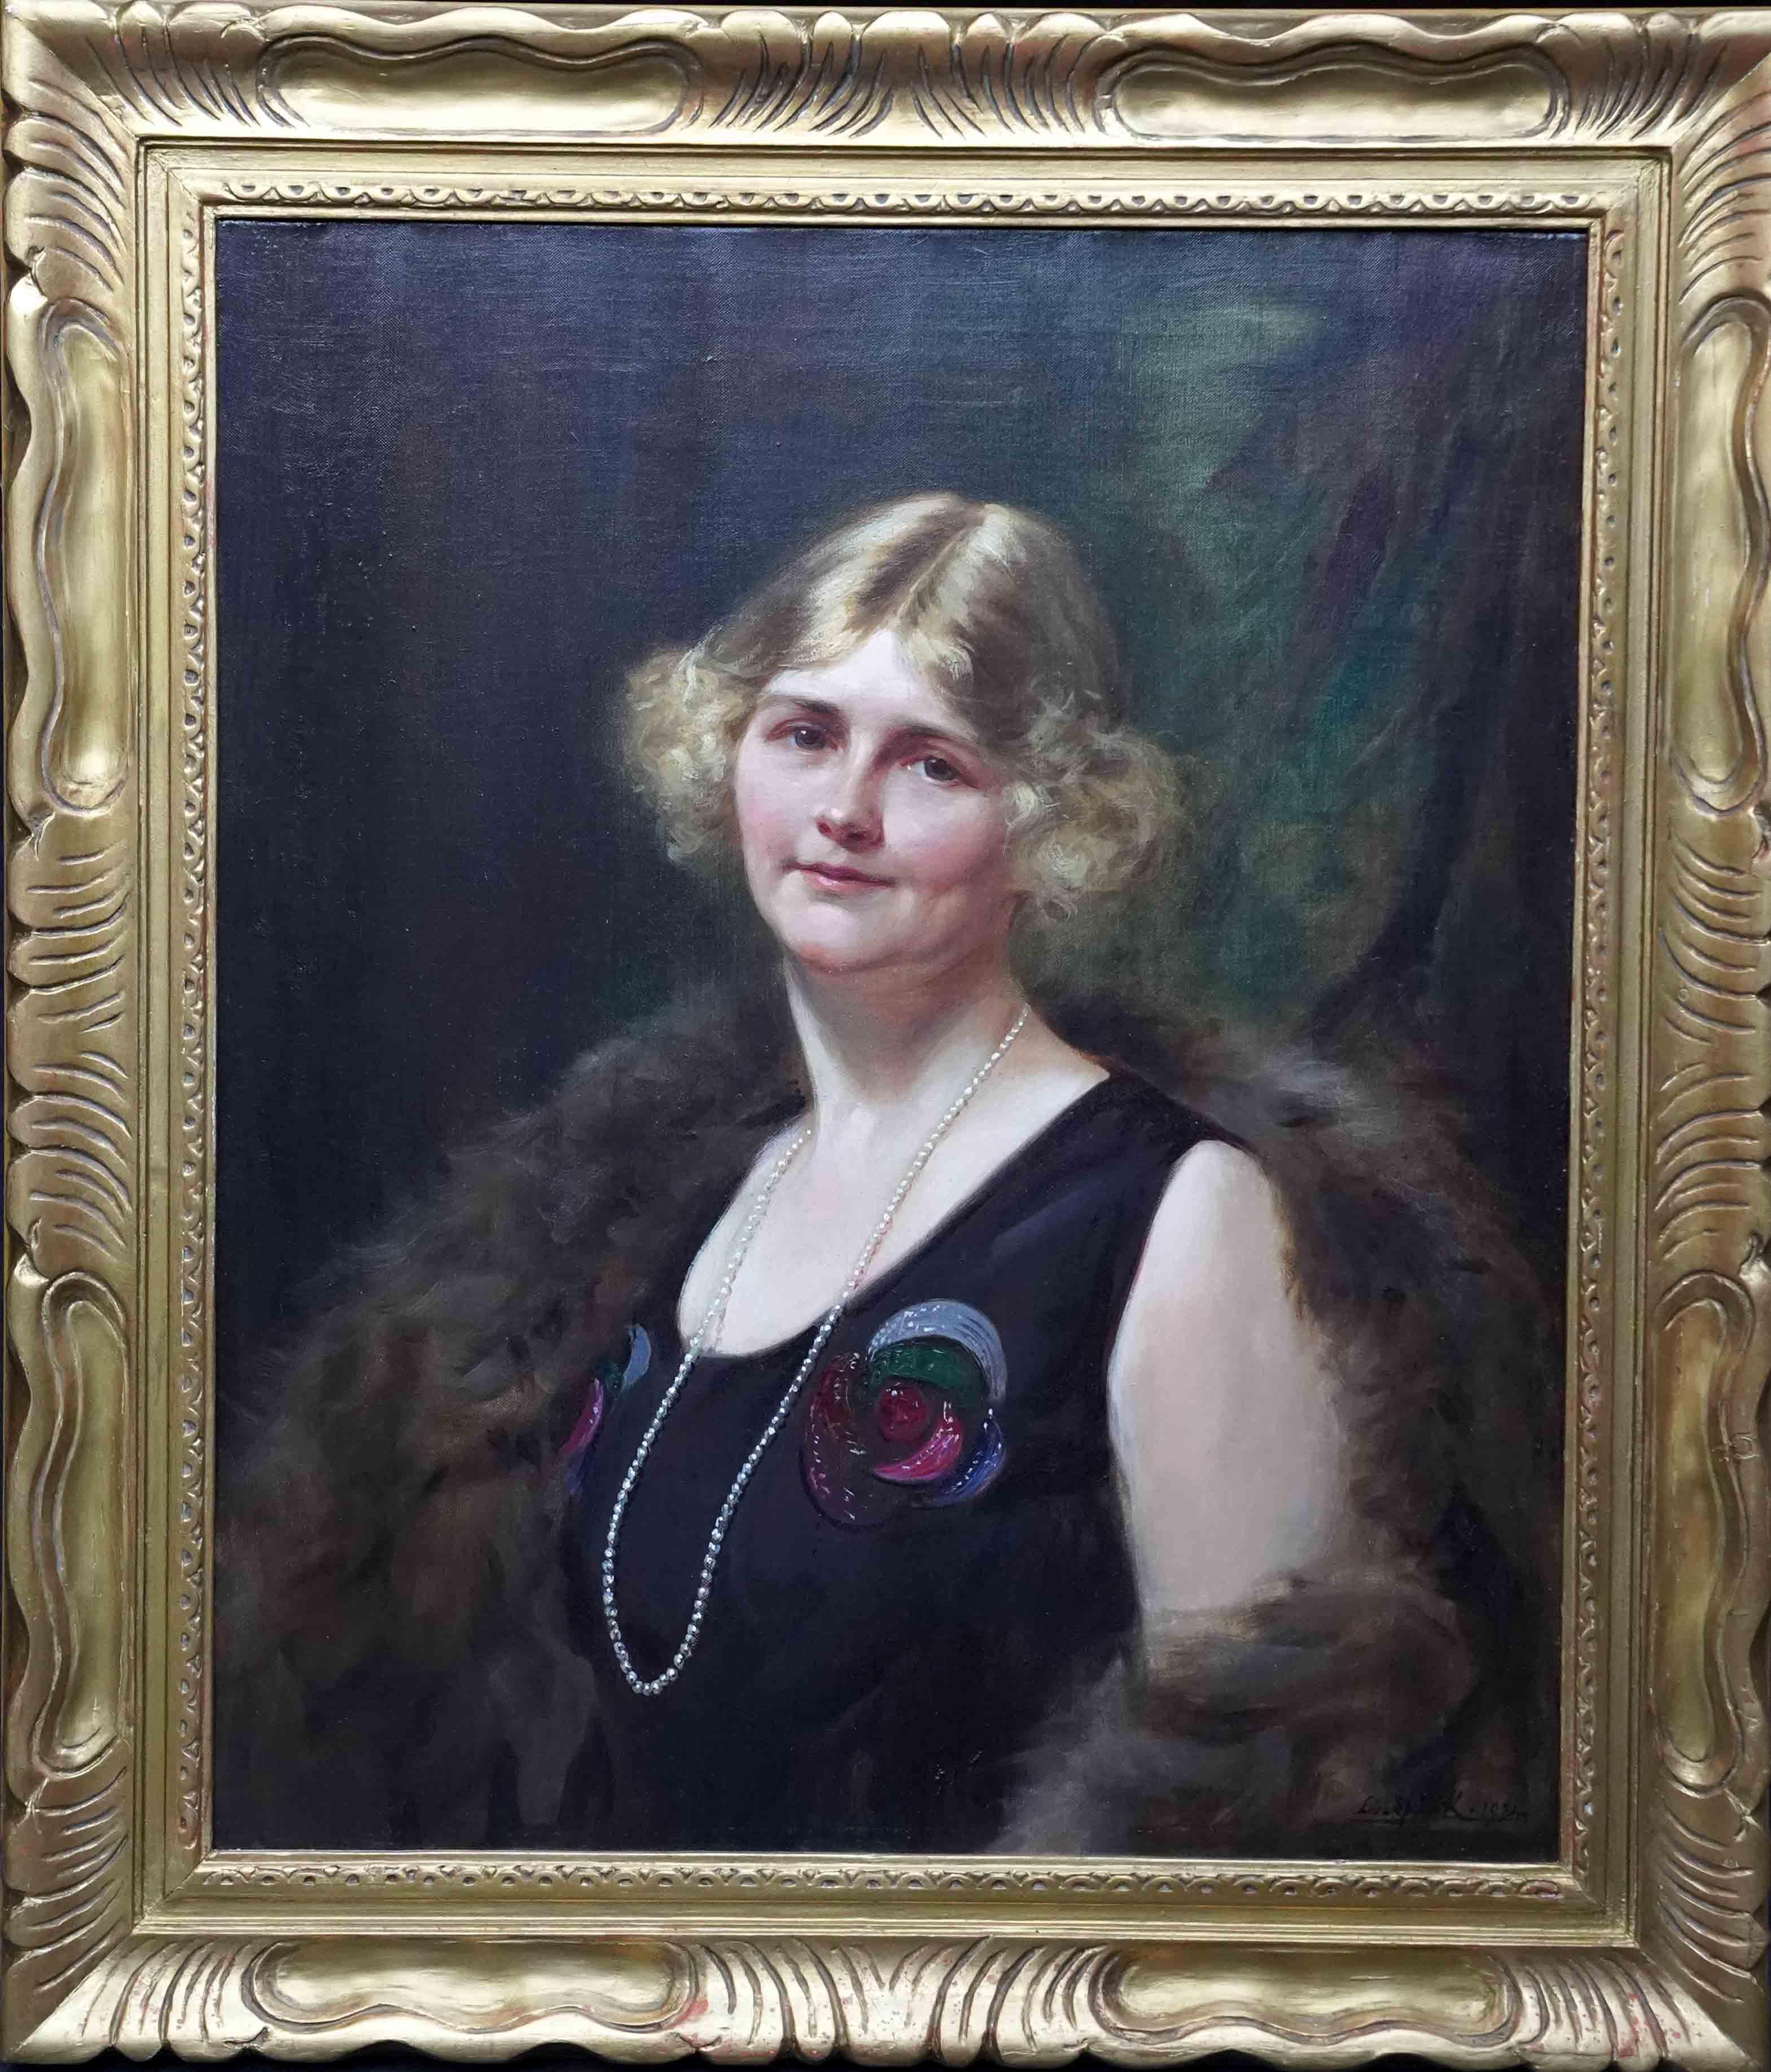 Leon Sprinck Portrait Painting - Art Deco Portrait of a Lady - British 1920's art female portrait oil painting